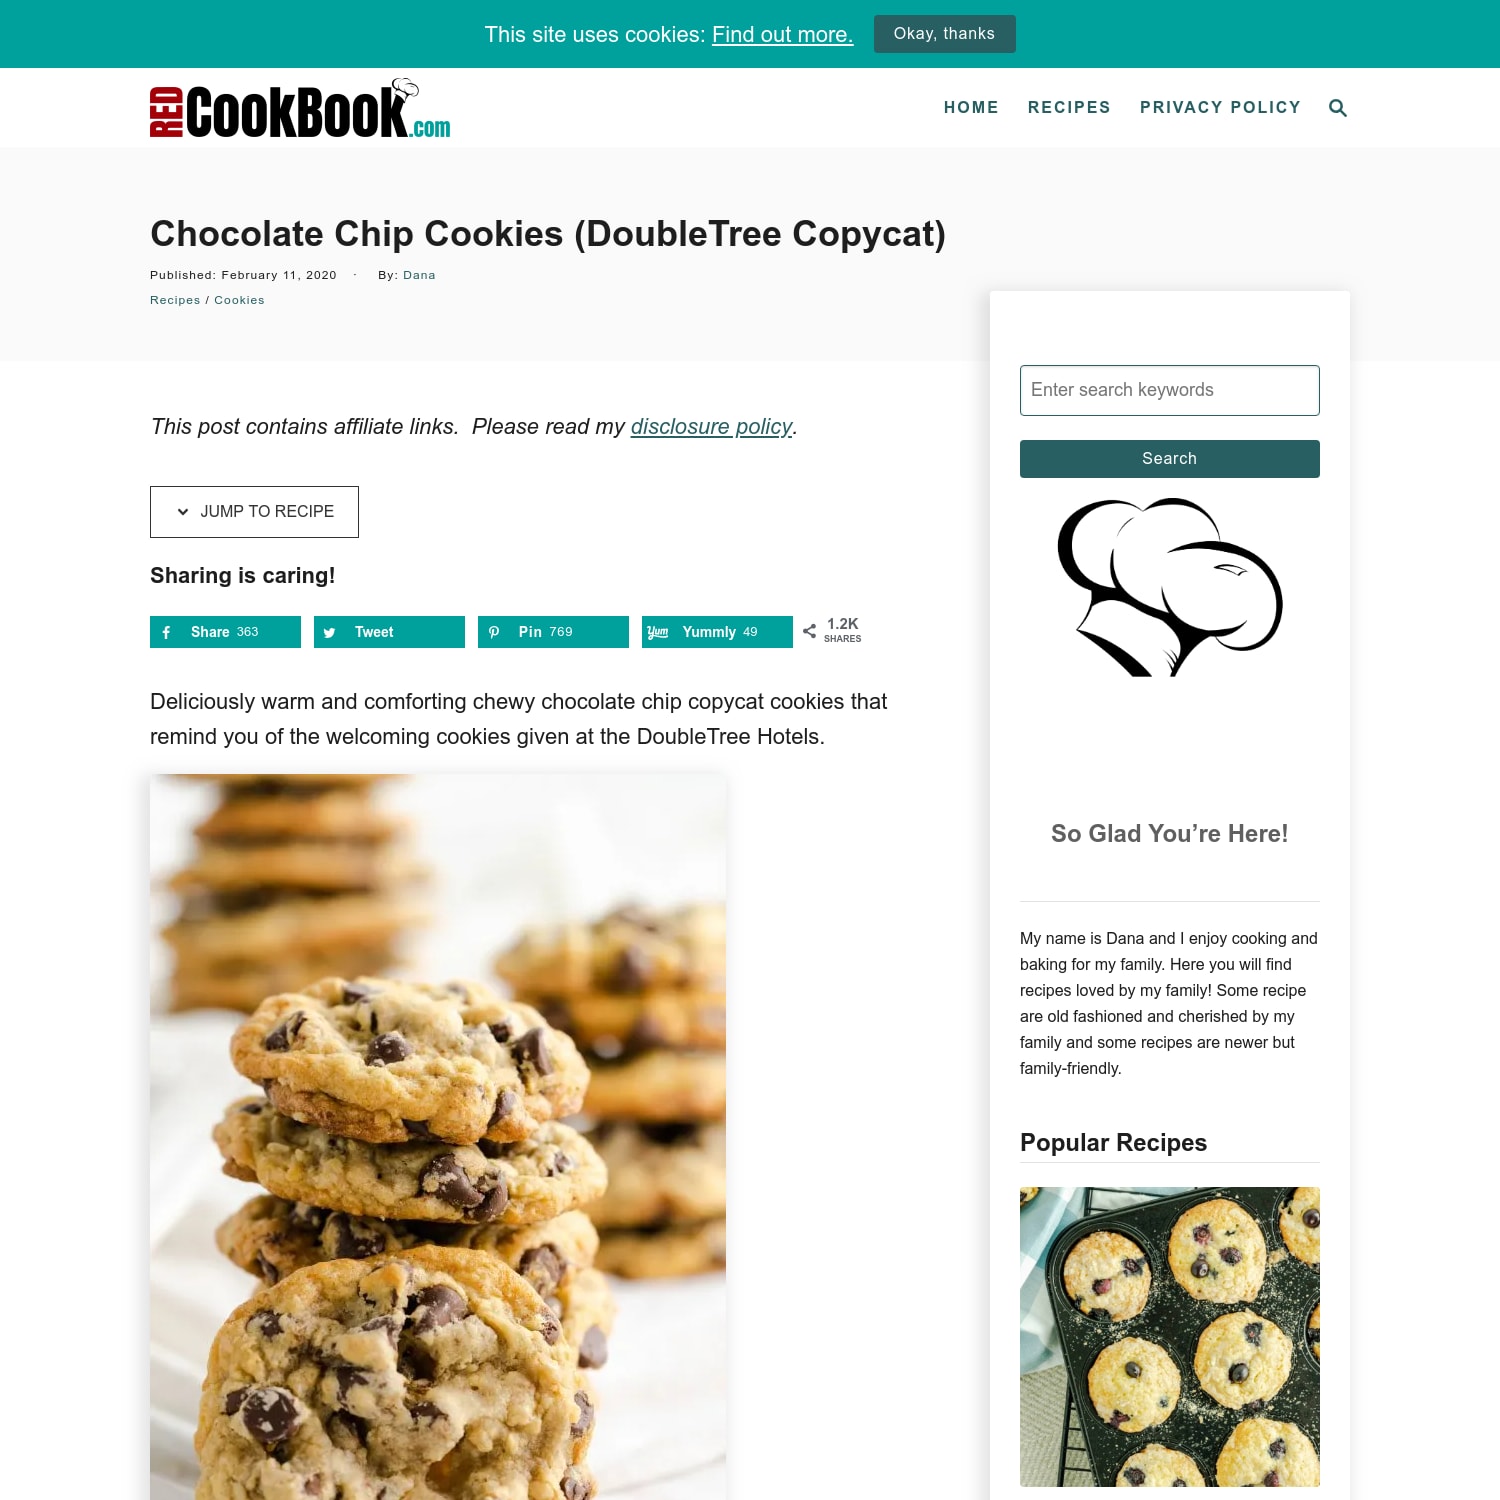 Chocolate Chip Cookies (DoubleTree Copycat)